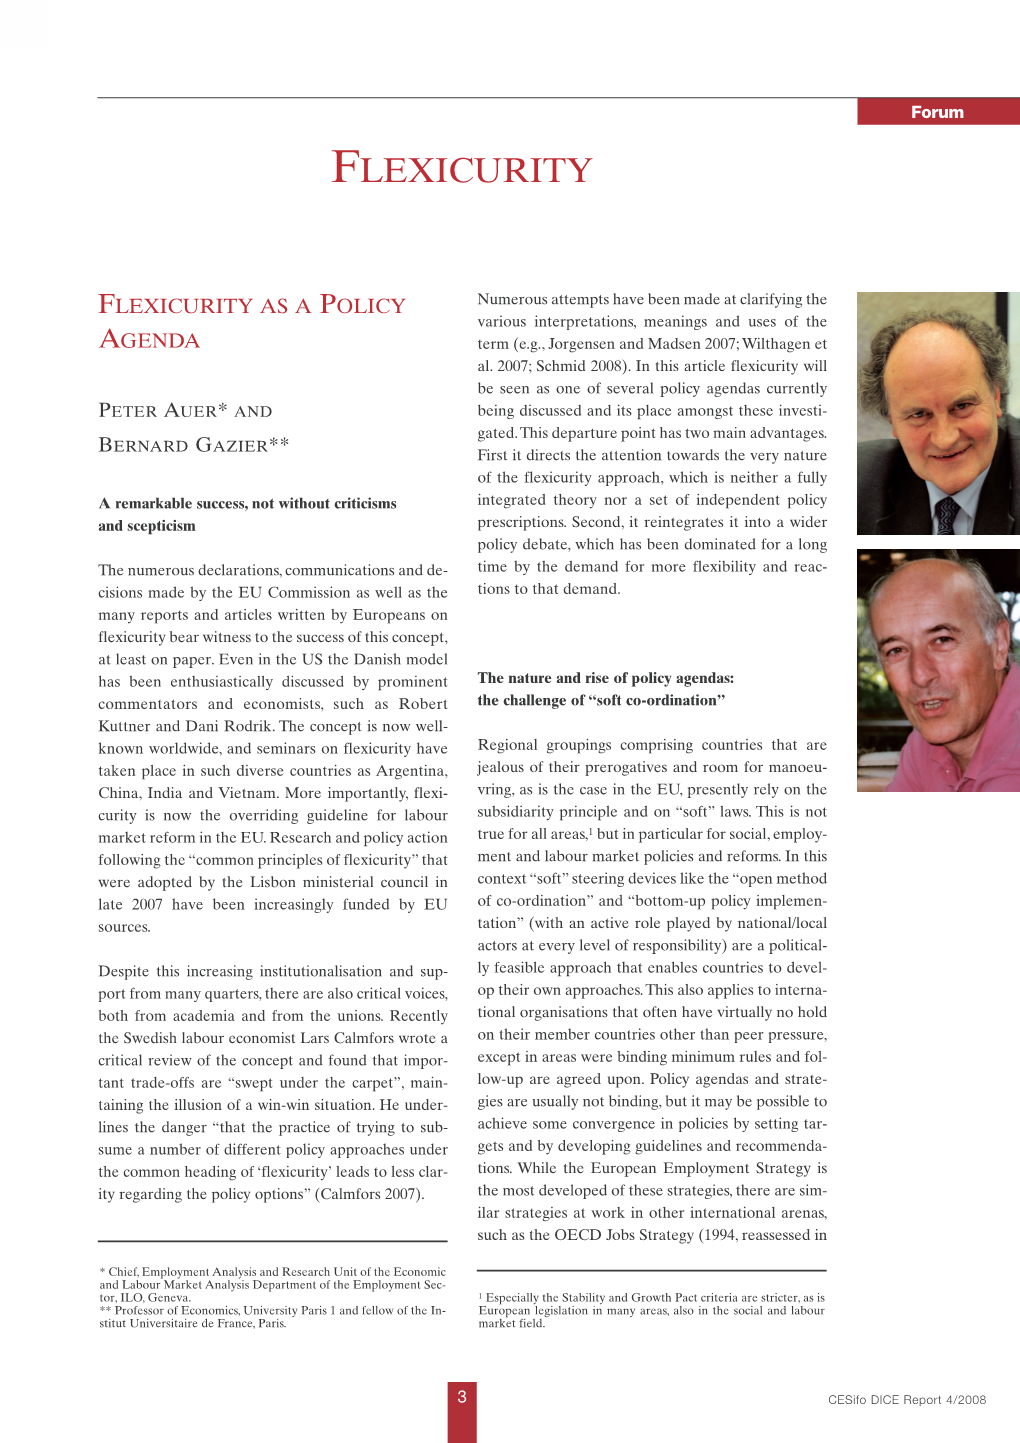 Flexicurity As a Policy Agenda